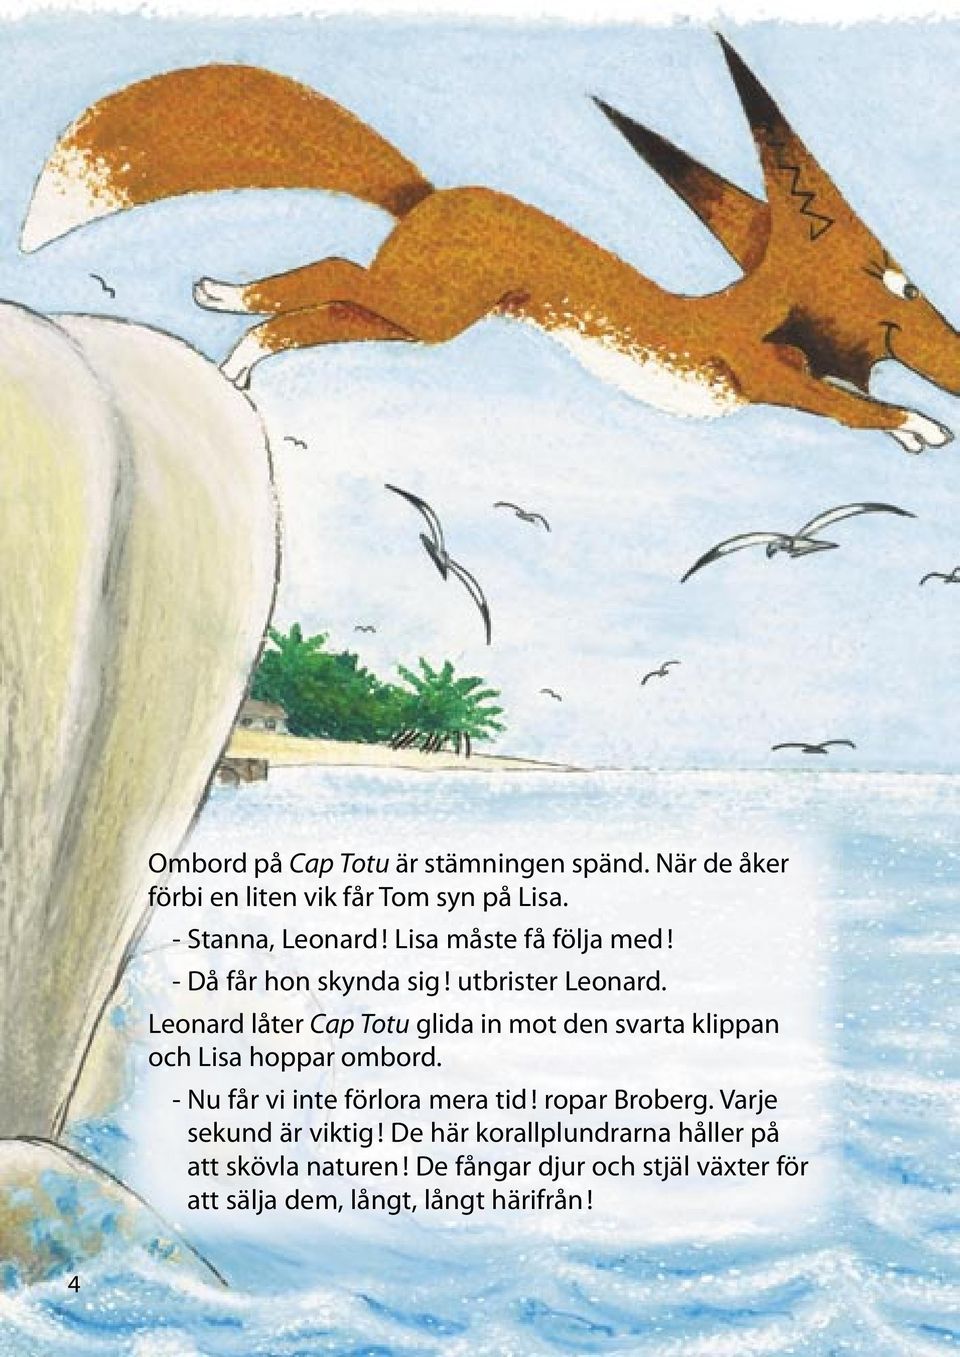 Leonard låter Cap Totu glida in mot den svarta klippan och Lisa hoppar ombord. - Nu får vi inte förlora mera tid!